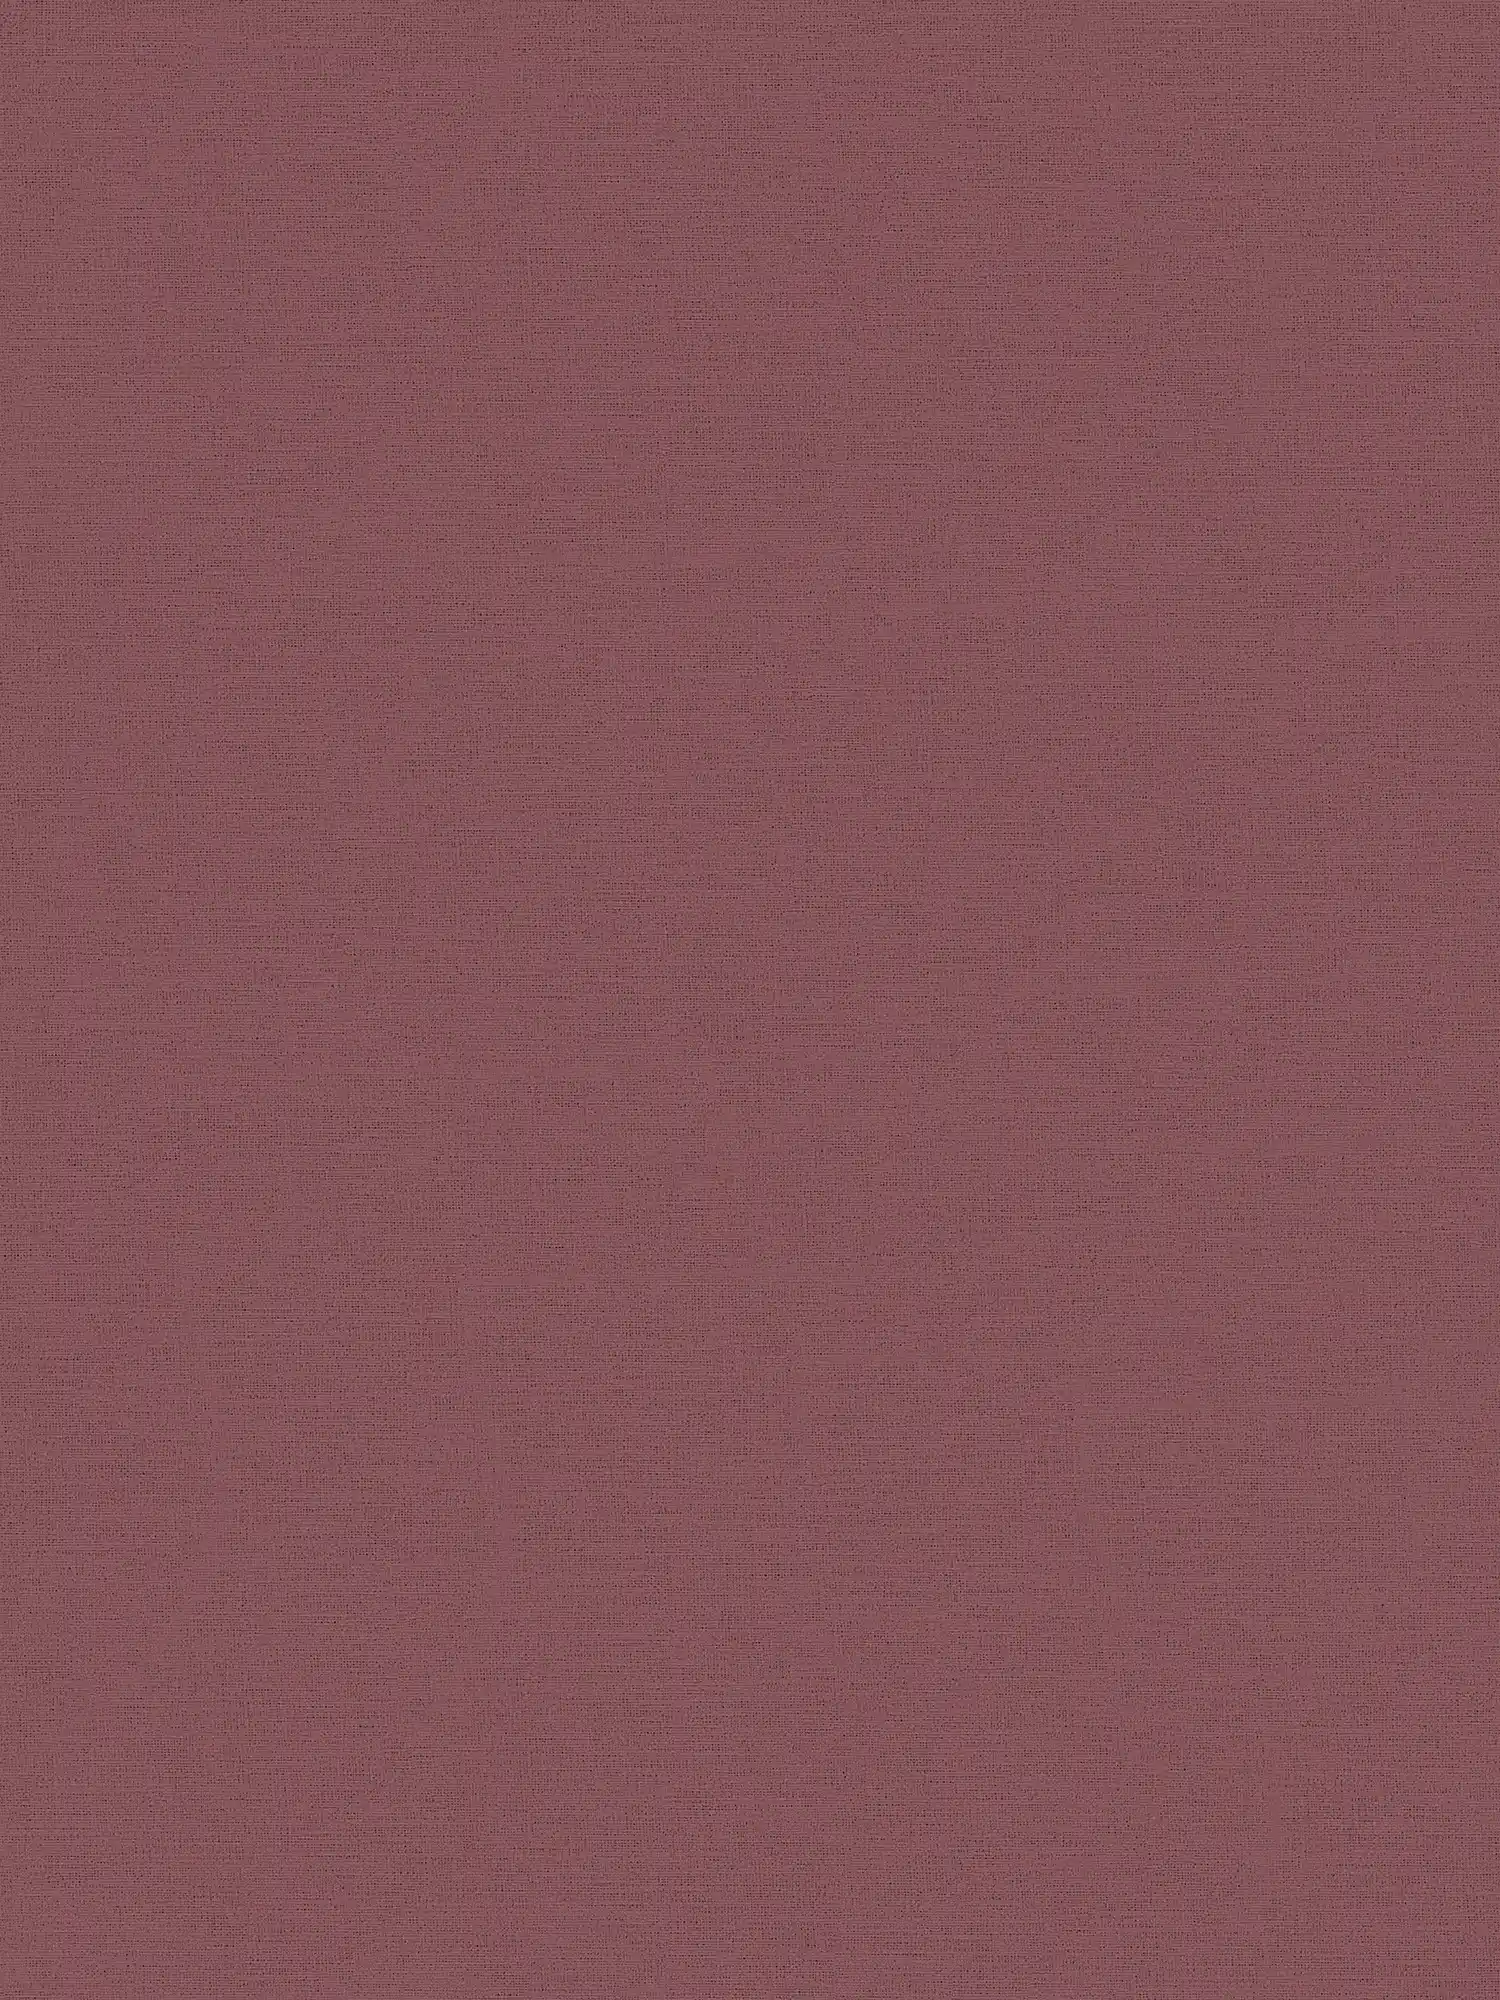 Papel pintado liso rojo burdeos con óptica textil
